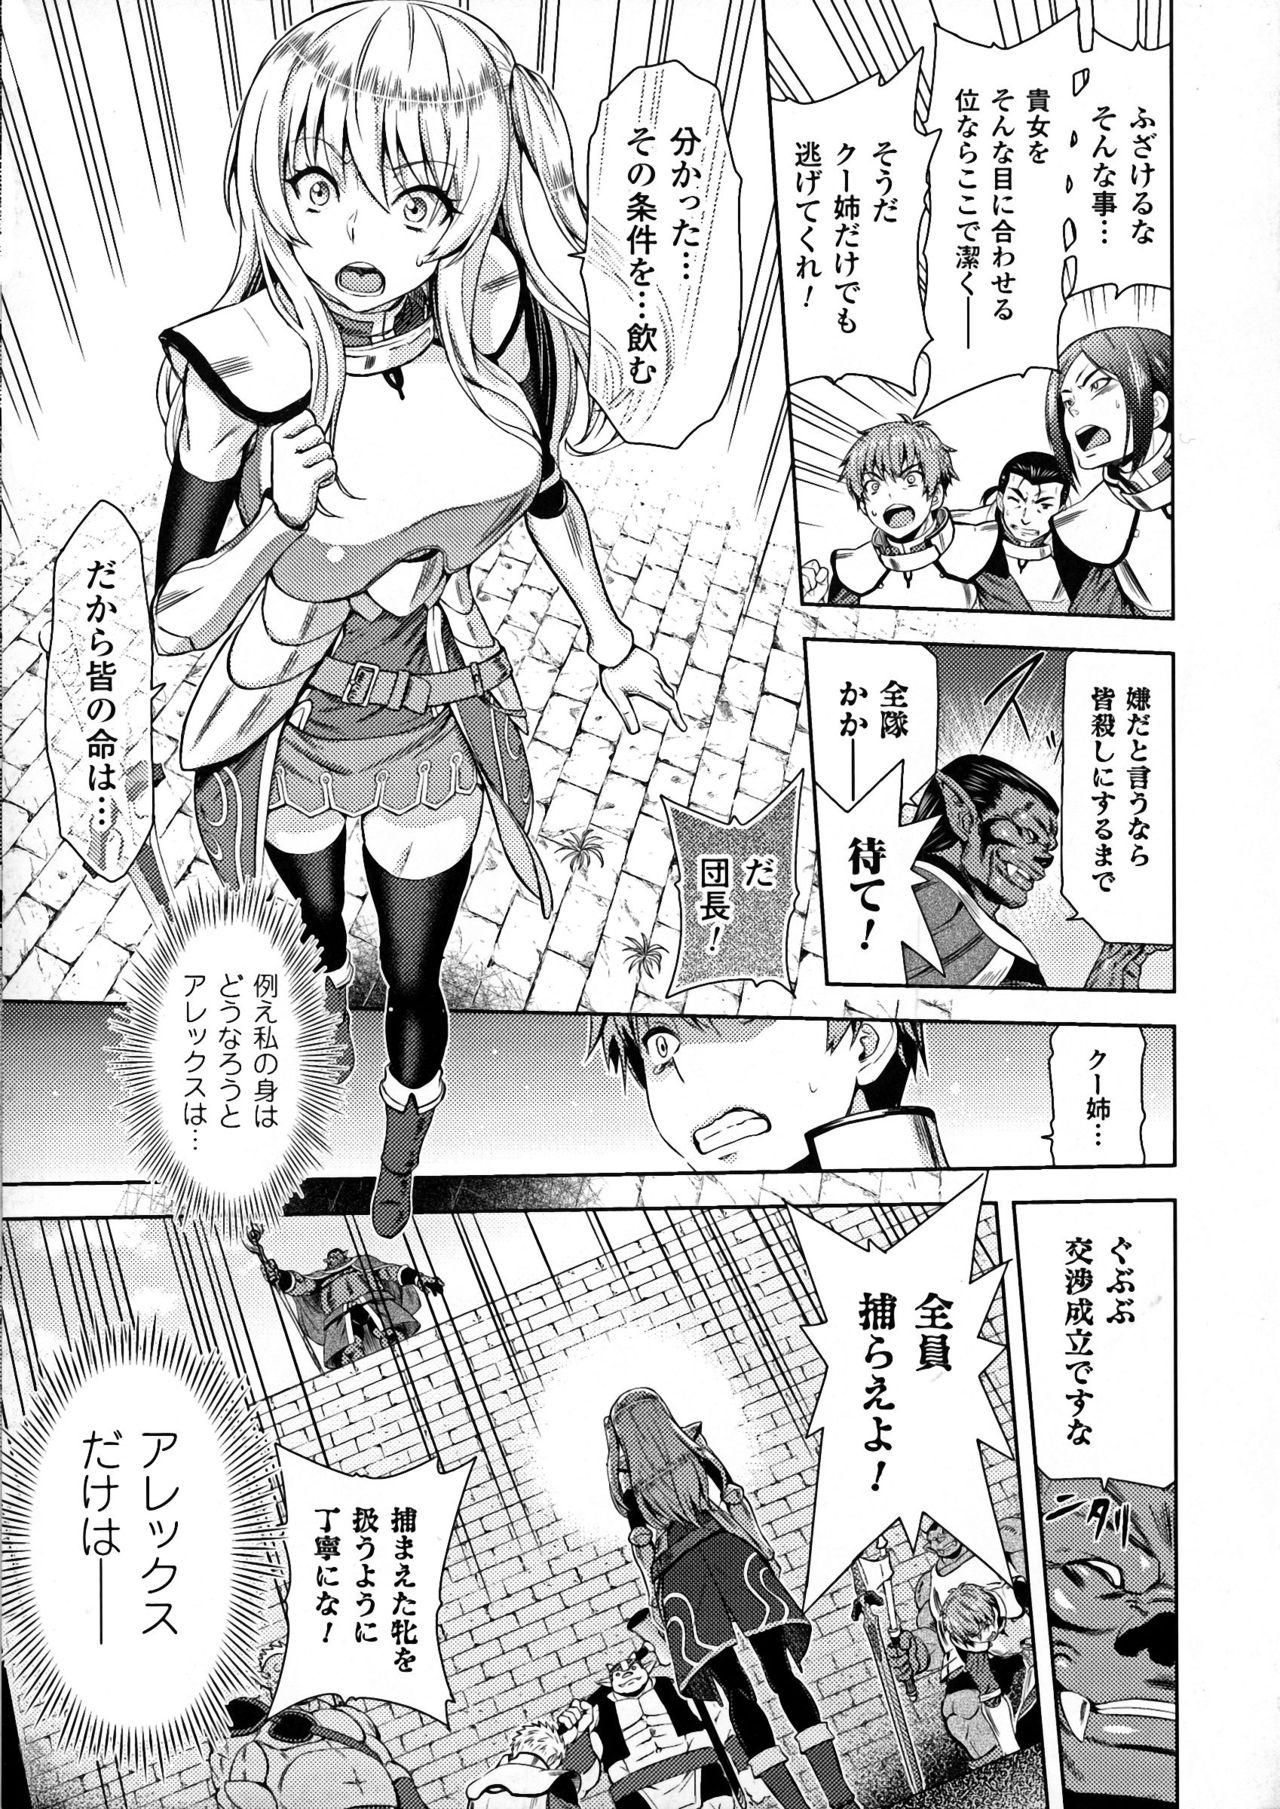 Realsex Seigi no Heroine Kangoku File DX Vol. 7 Asshole - Page 13